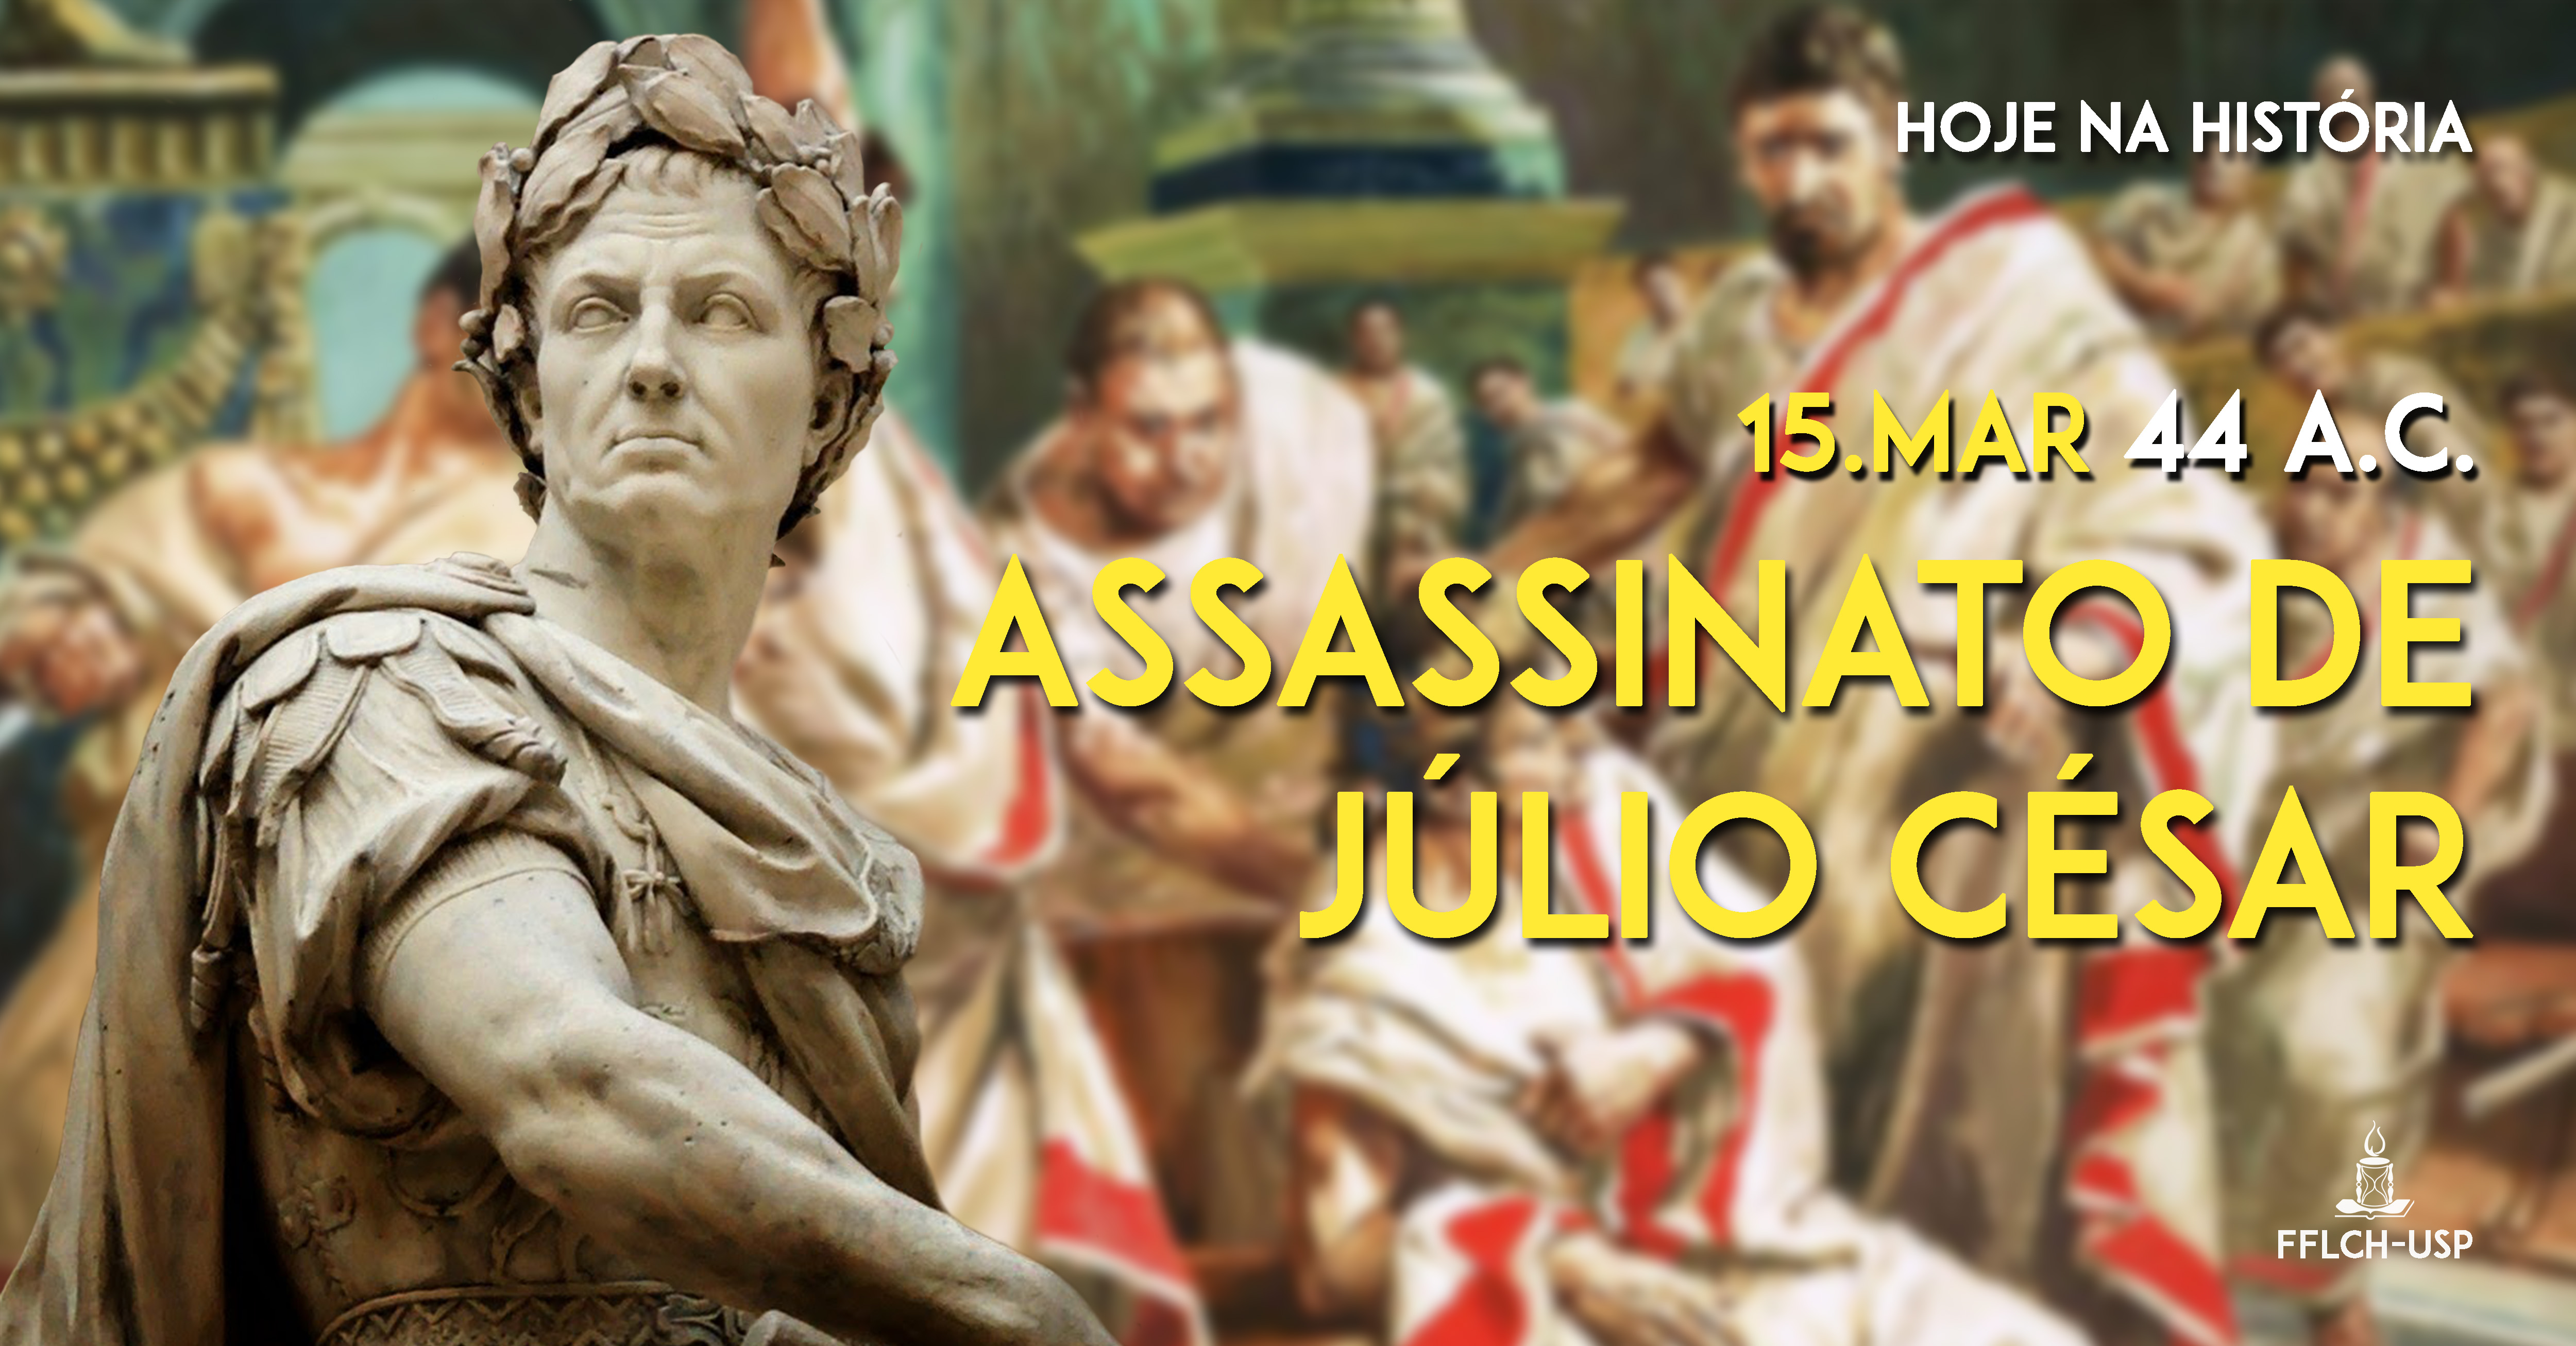 Júlio César é assassinado no dia 15 de março de 44 a.C.